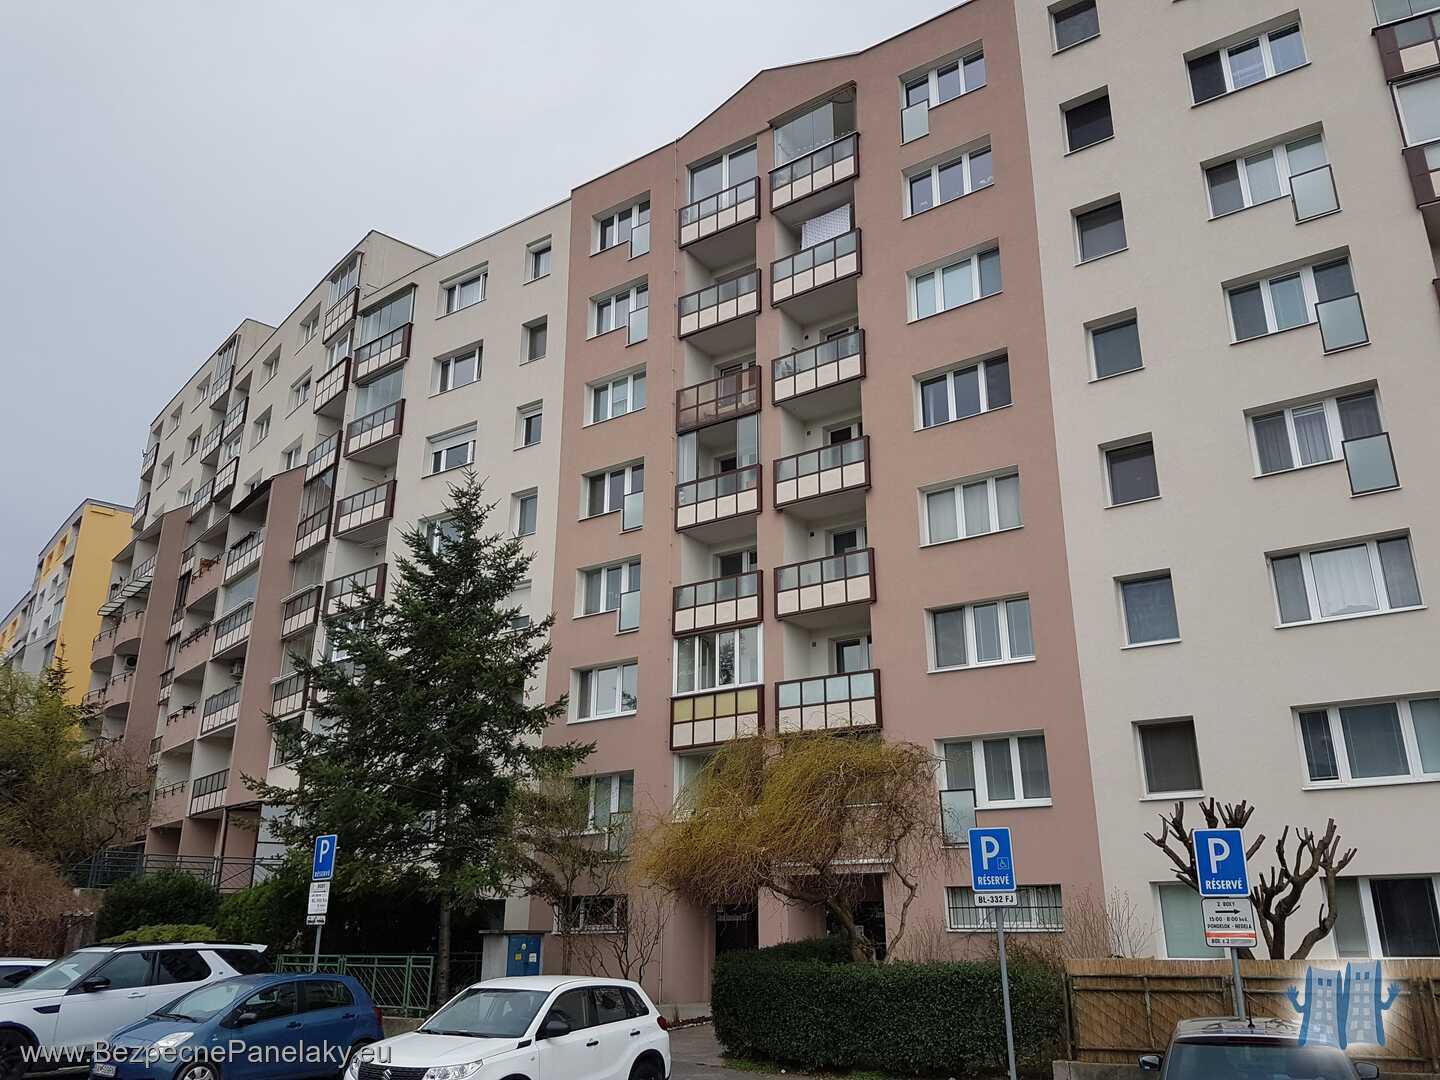 Bytový dom na ulici Jána Stanislava 29-37 v Bratislave